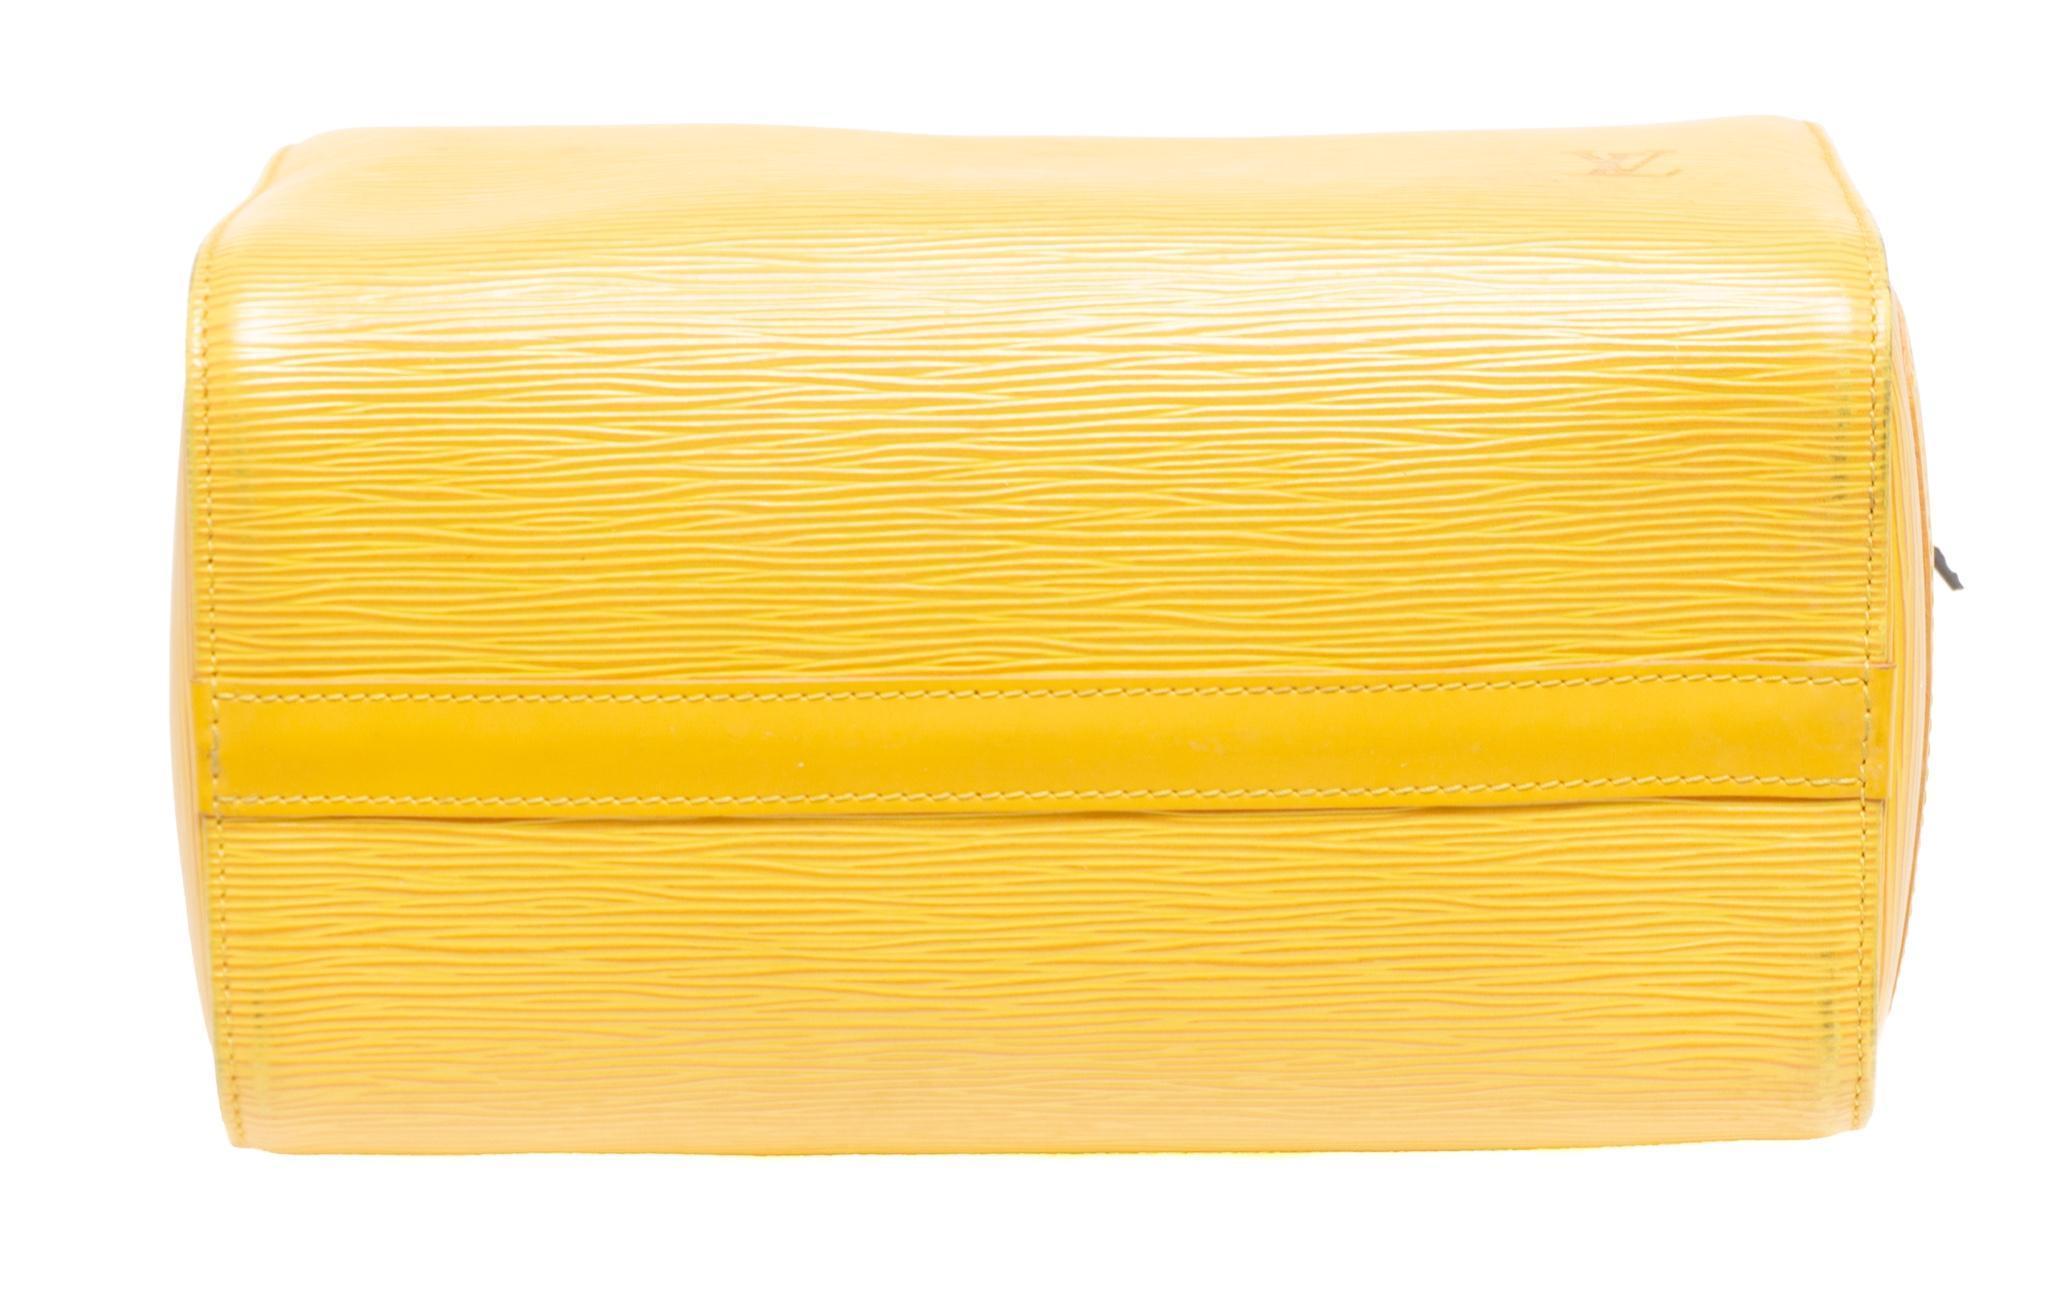 At Auction: Louis Vuitton Yellow Epi Leather Speedy 25